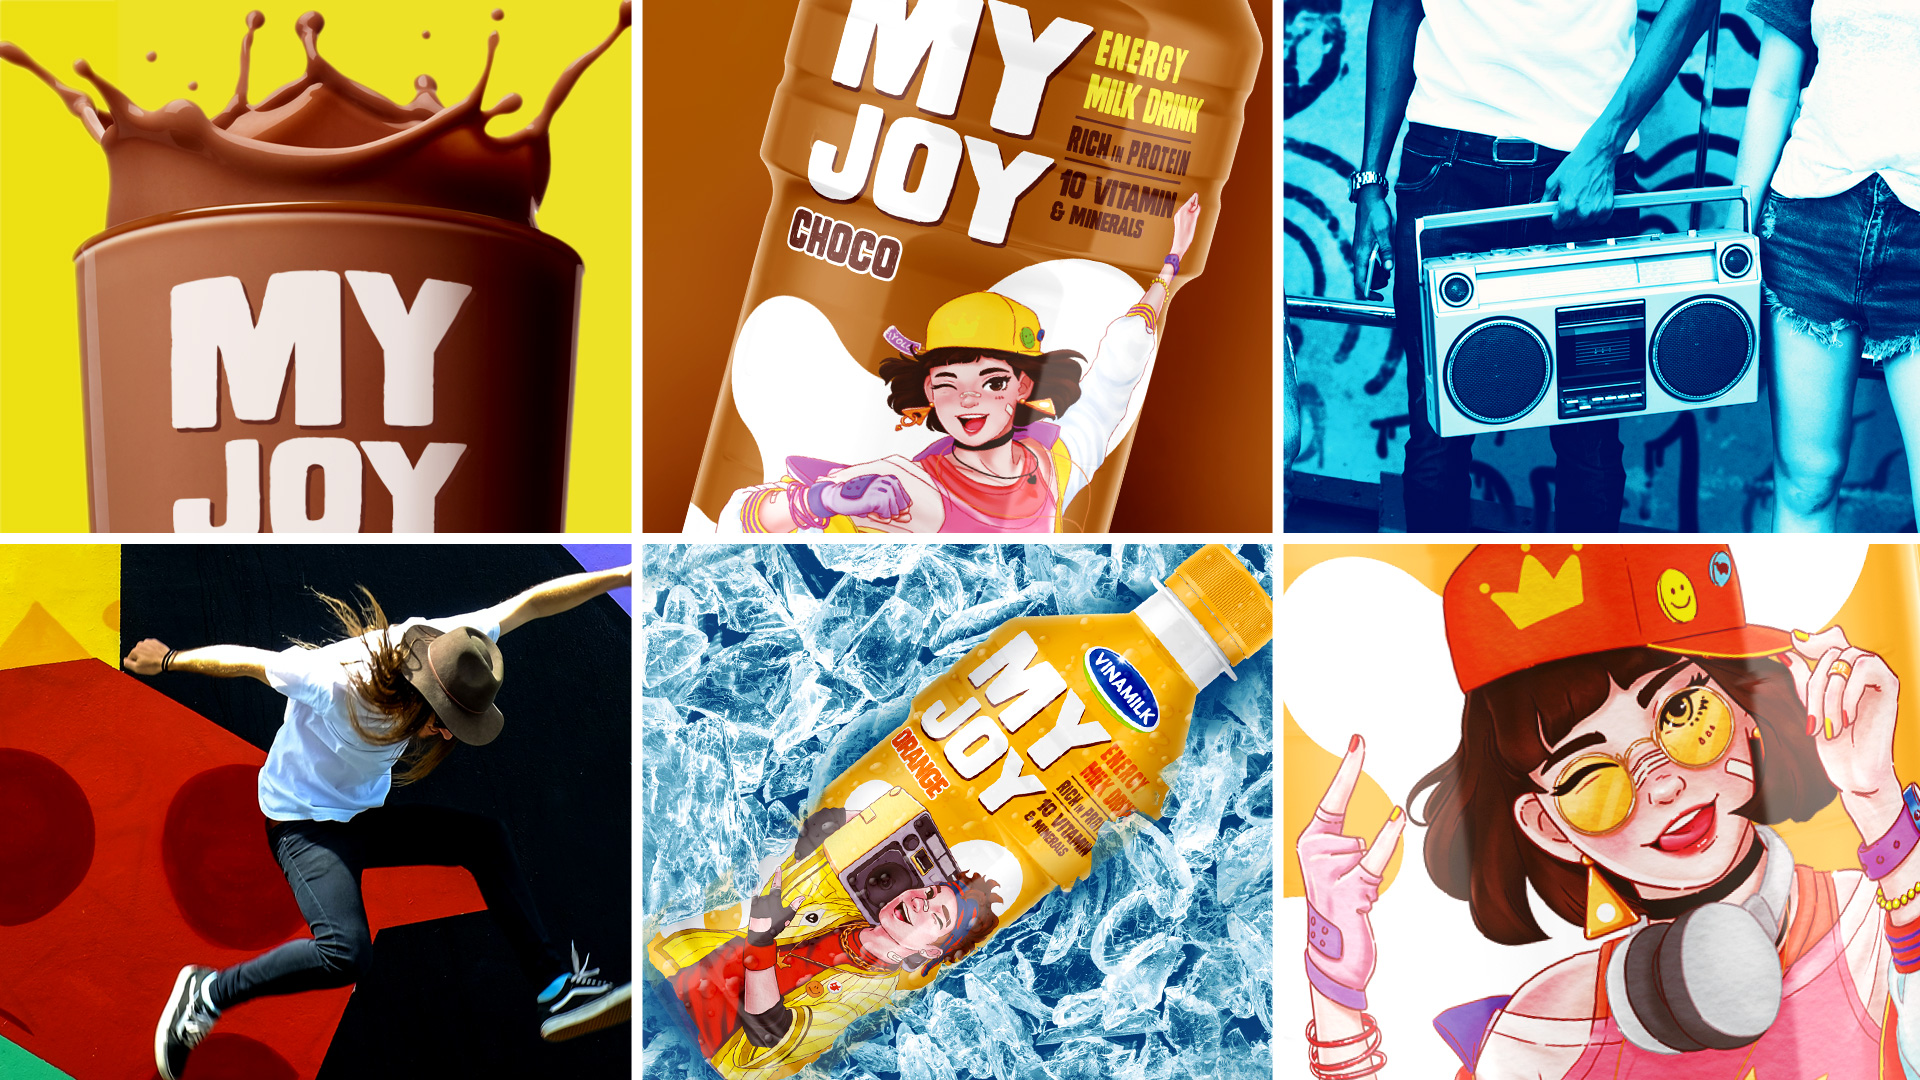 My Joy-Packaging-Design-Yogurt Drink